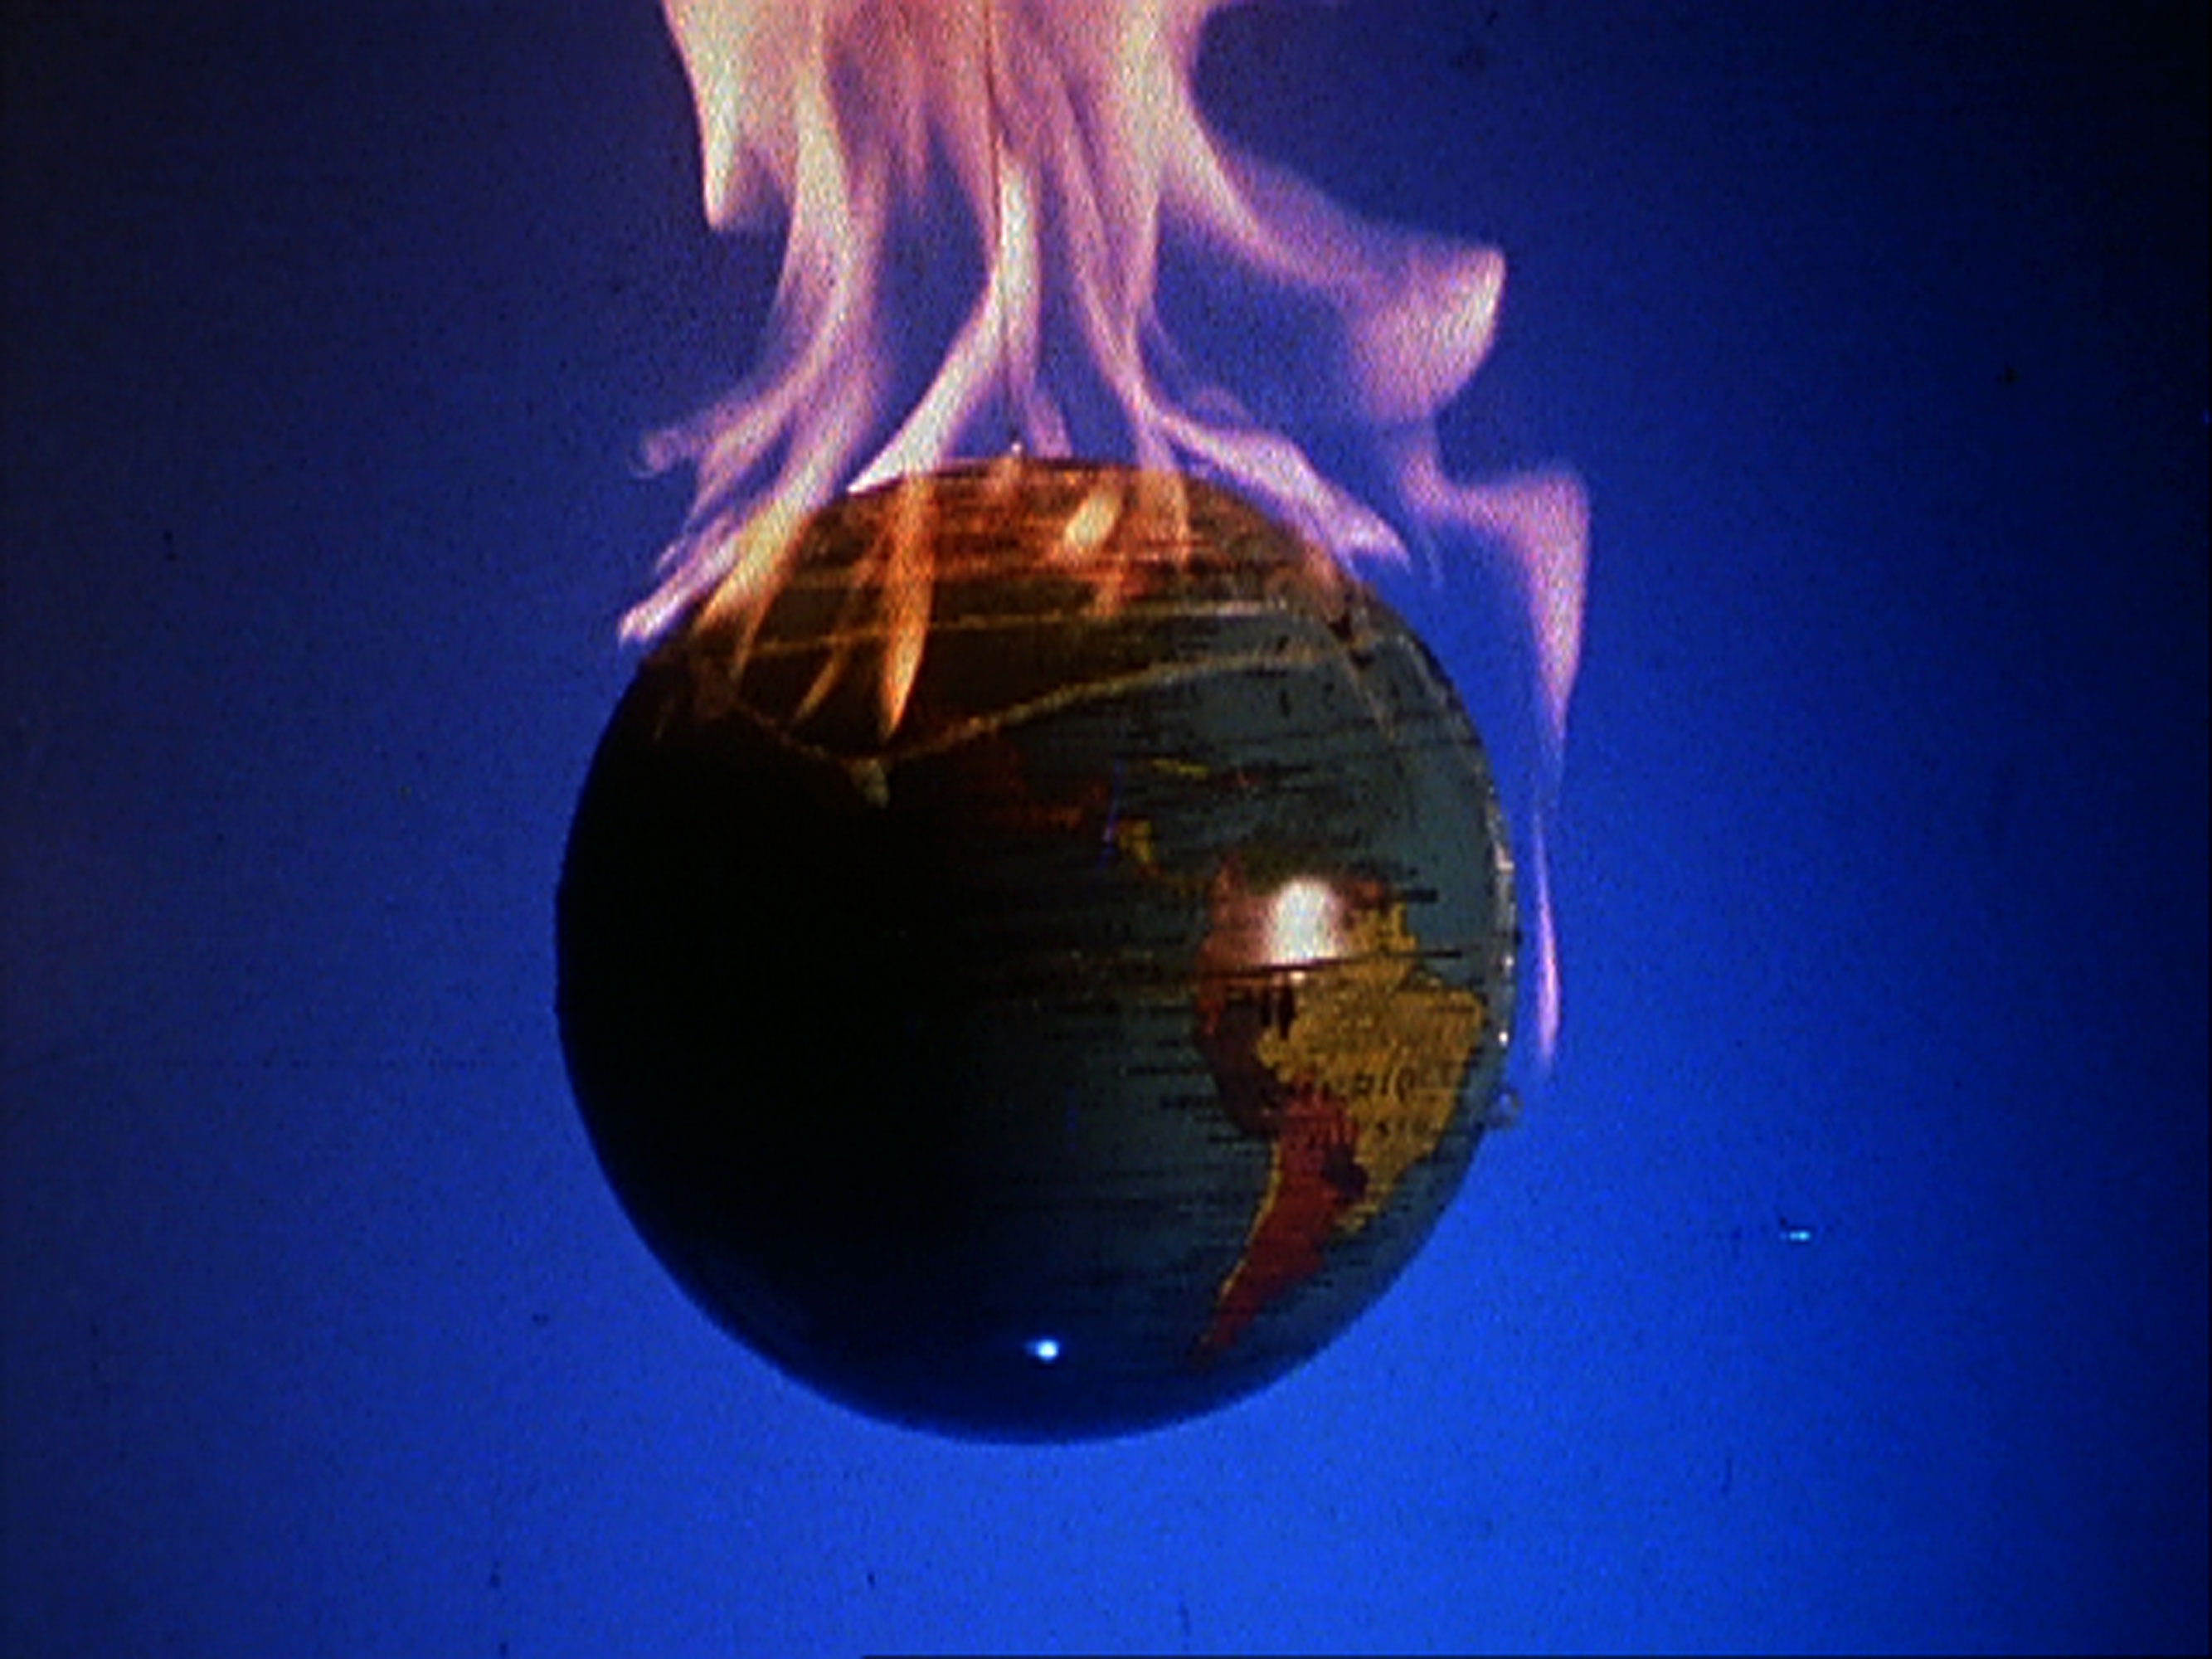 A flaming globe